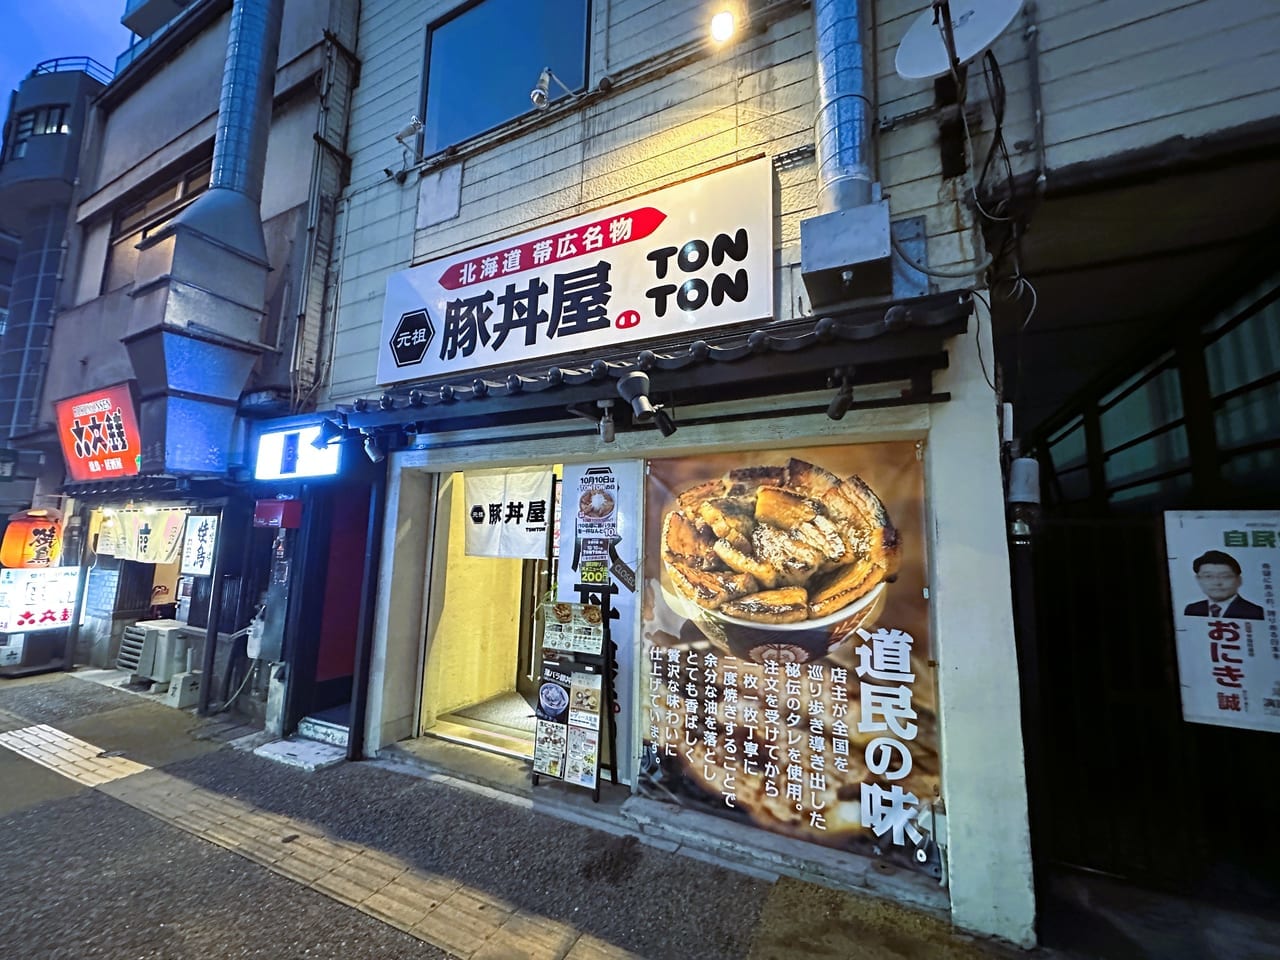 １０月１０日（火）”TONTONの日” 。『 元祖豚丼屋TONTON 六本松駅前店 』で、年に一度のスペシャルイベント開催！